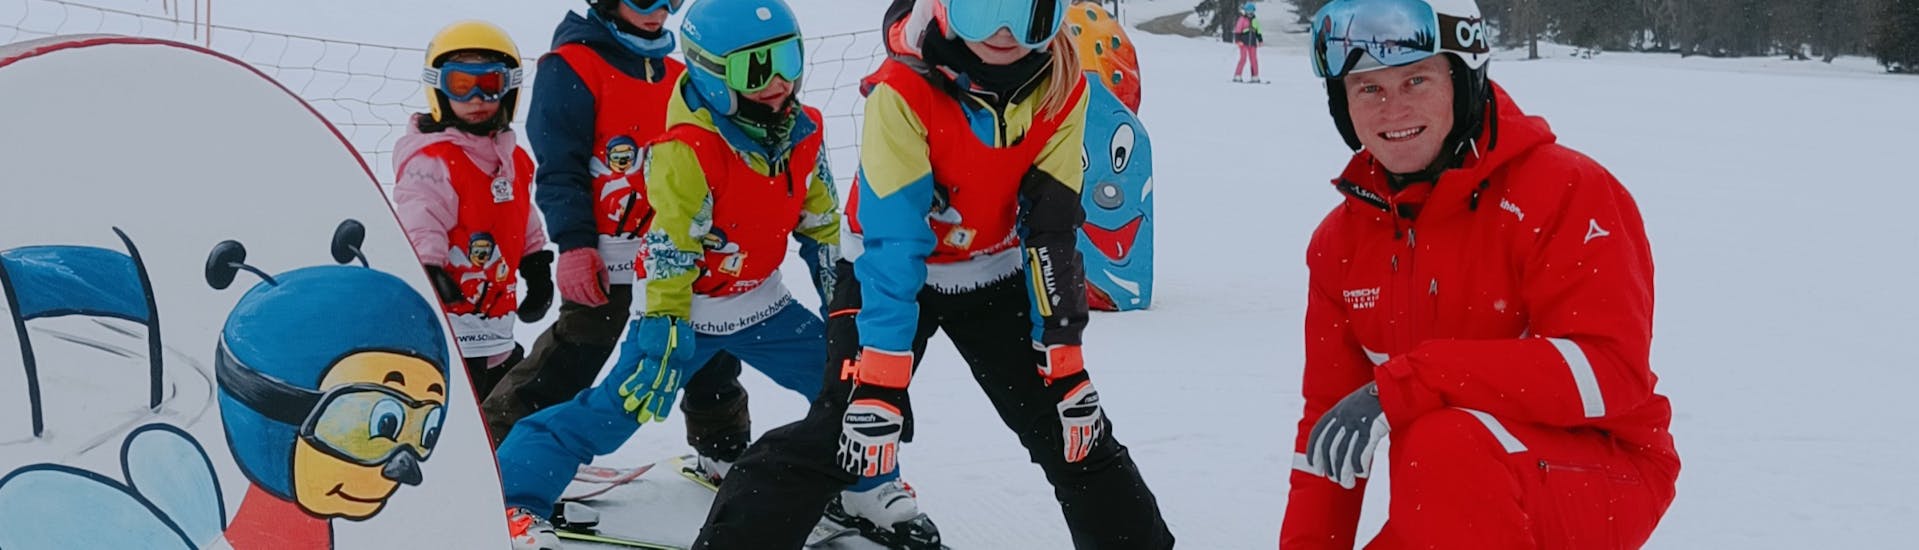 Lezioni di sci per bambini a partire da 4 anni per avanzati con Skischule Kreischberg - Mayer.